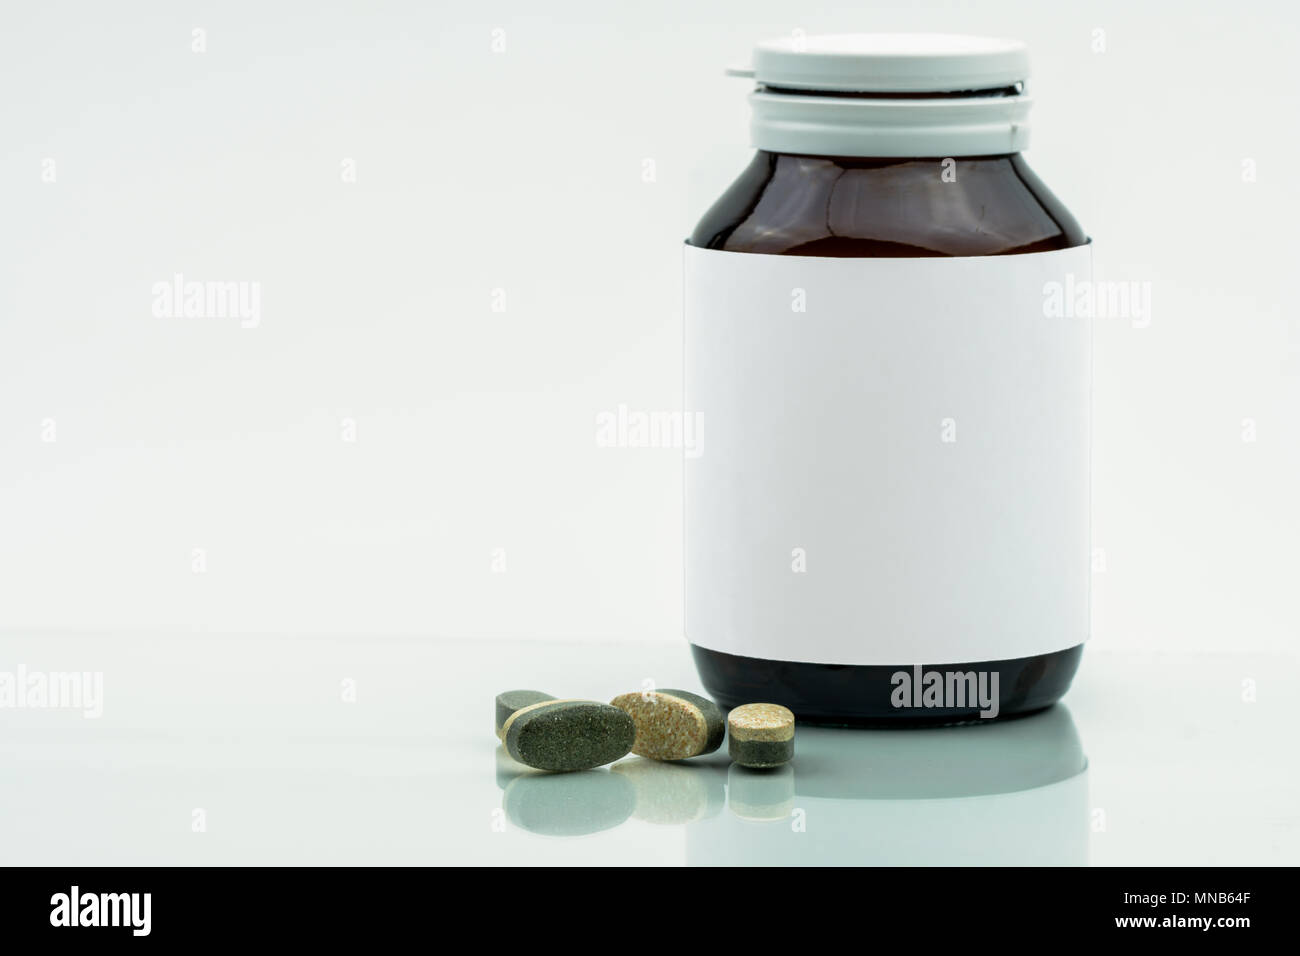 Vitamine, Ergänzungen und Mineralien Dual Layer tabletten Pillen und Medizin braunen Glasflasche mit leeren Label auf weißem Hintergrund mit Kopie sp isoliert Stockfoto